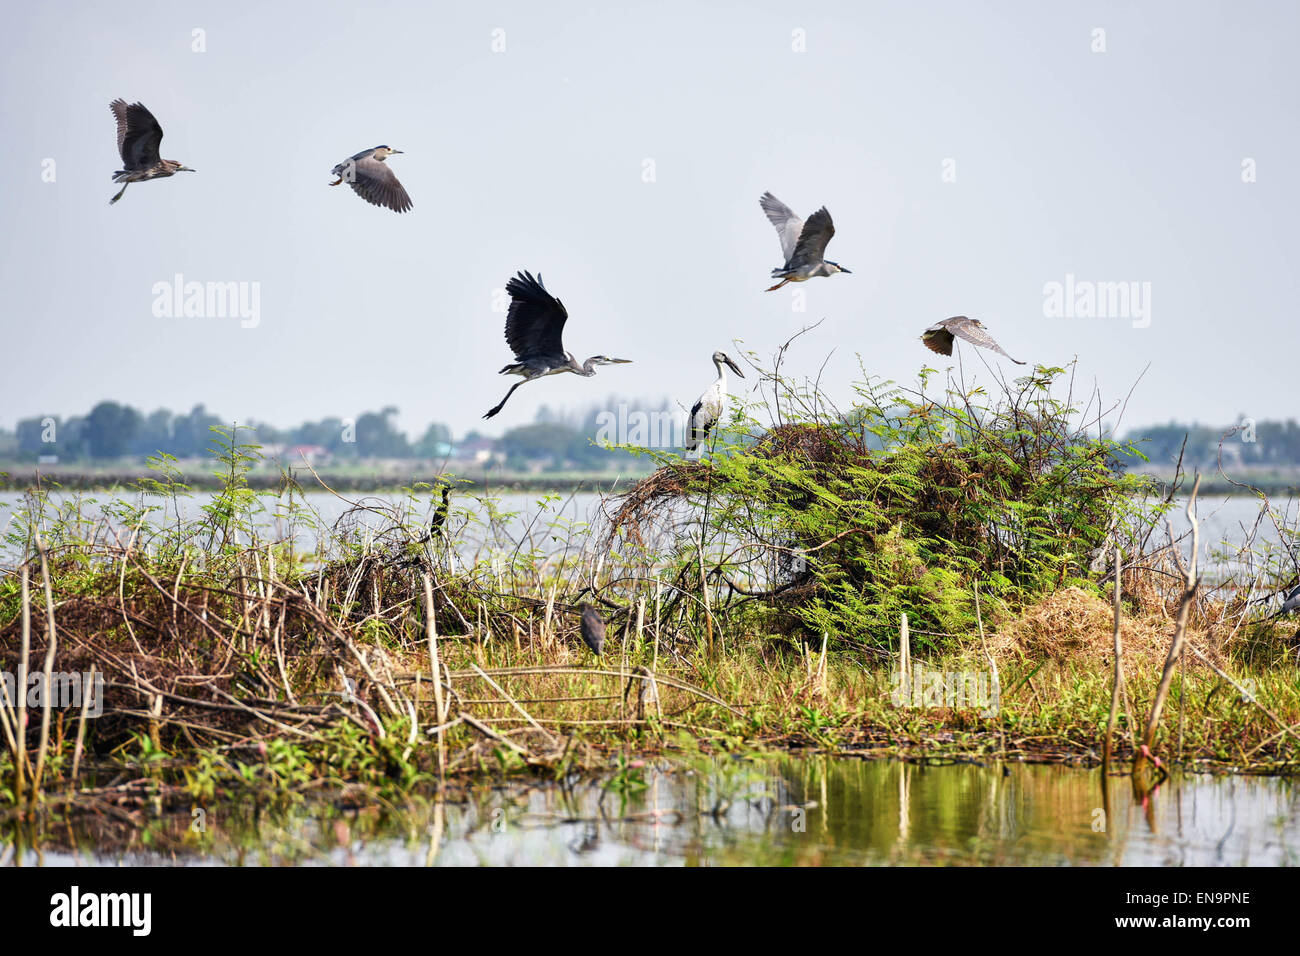 La province de Nakhon Sawan, Thaïlande. Apr 30, 2015. Les oiseaux volent au-dessus de l'eau Bueng Boraphet, un marais d'eau douce et du lac dans la province de Nakhon Sawan, centre de la Thaïlande, 30 avril 2015. Couvrant une superficie de 212,38 kilomètres carrés, Bueng Boraphet abrite près de 200 espèces animales et végétales. Le lac est une destination pour les oiseaux migrateurs entre septembre et mars. © Li Mangmang/Xinhua/Alamy Live News Banque D'Images